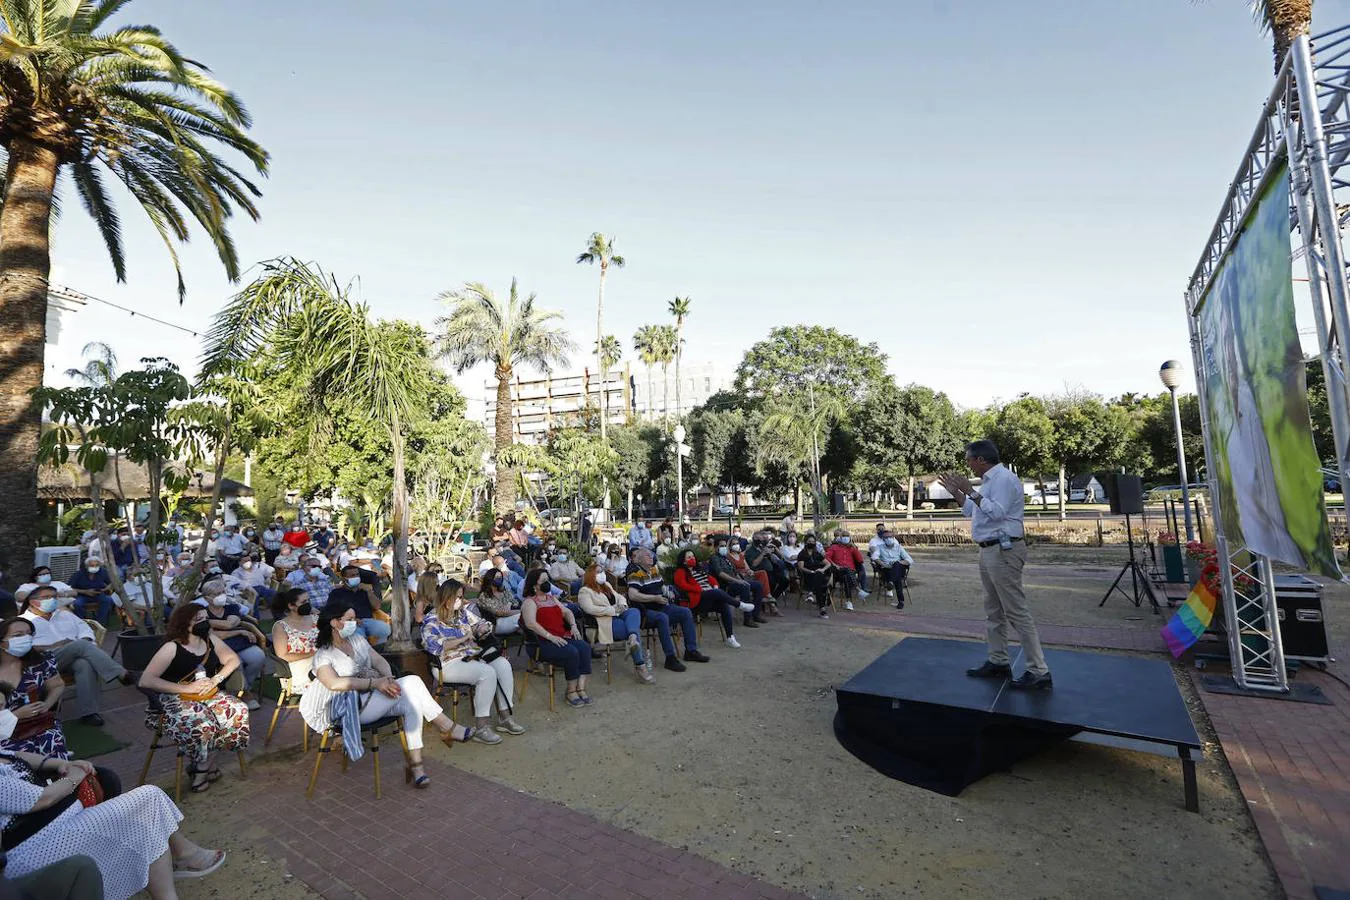 El acto de Juan Espadas en Córdoba, en imágenes